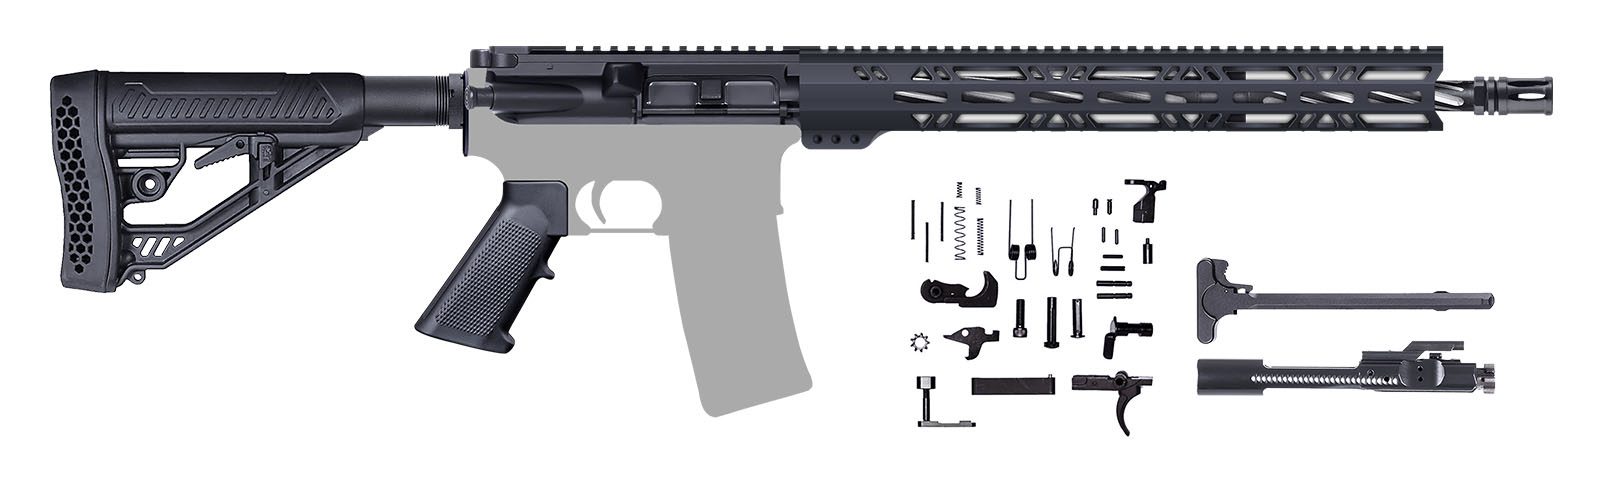 AR-15-Rifle-Kit